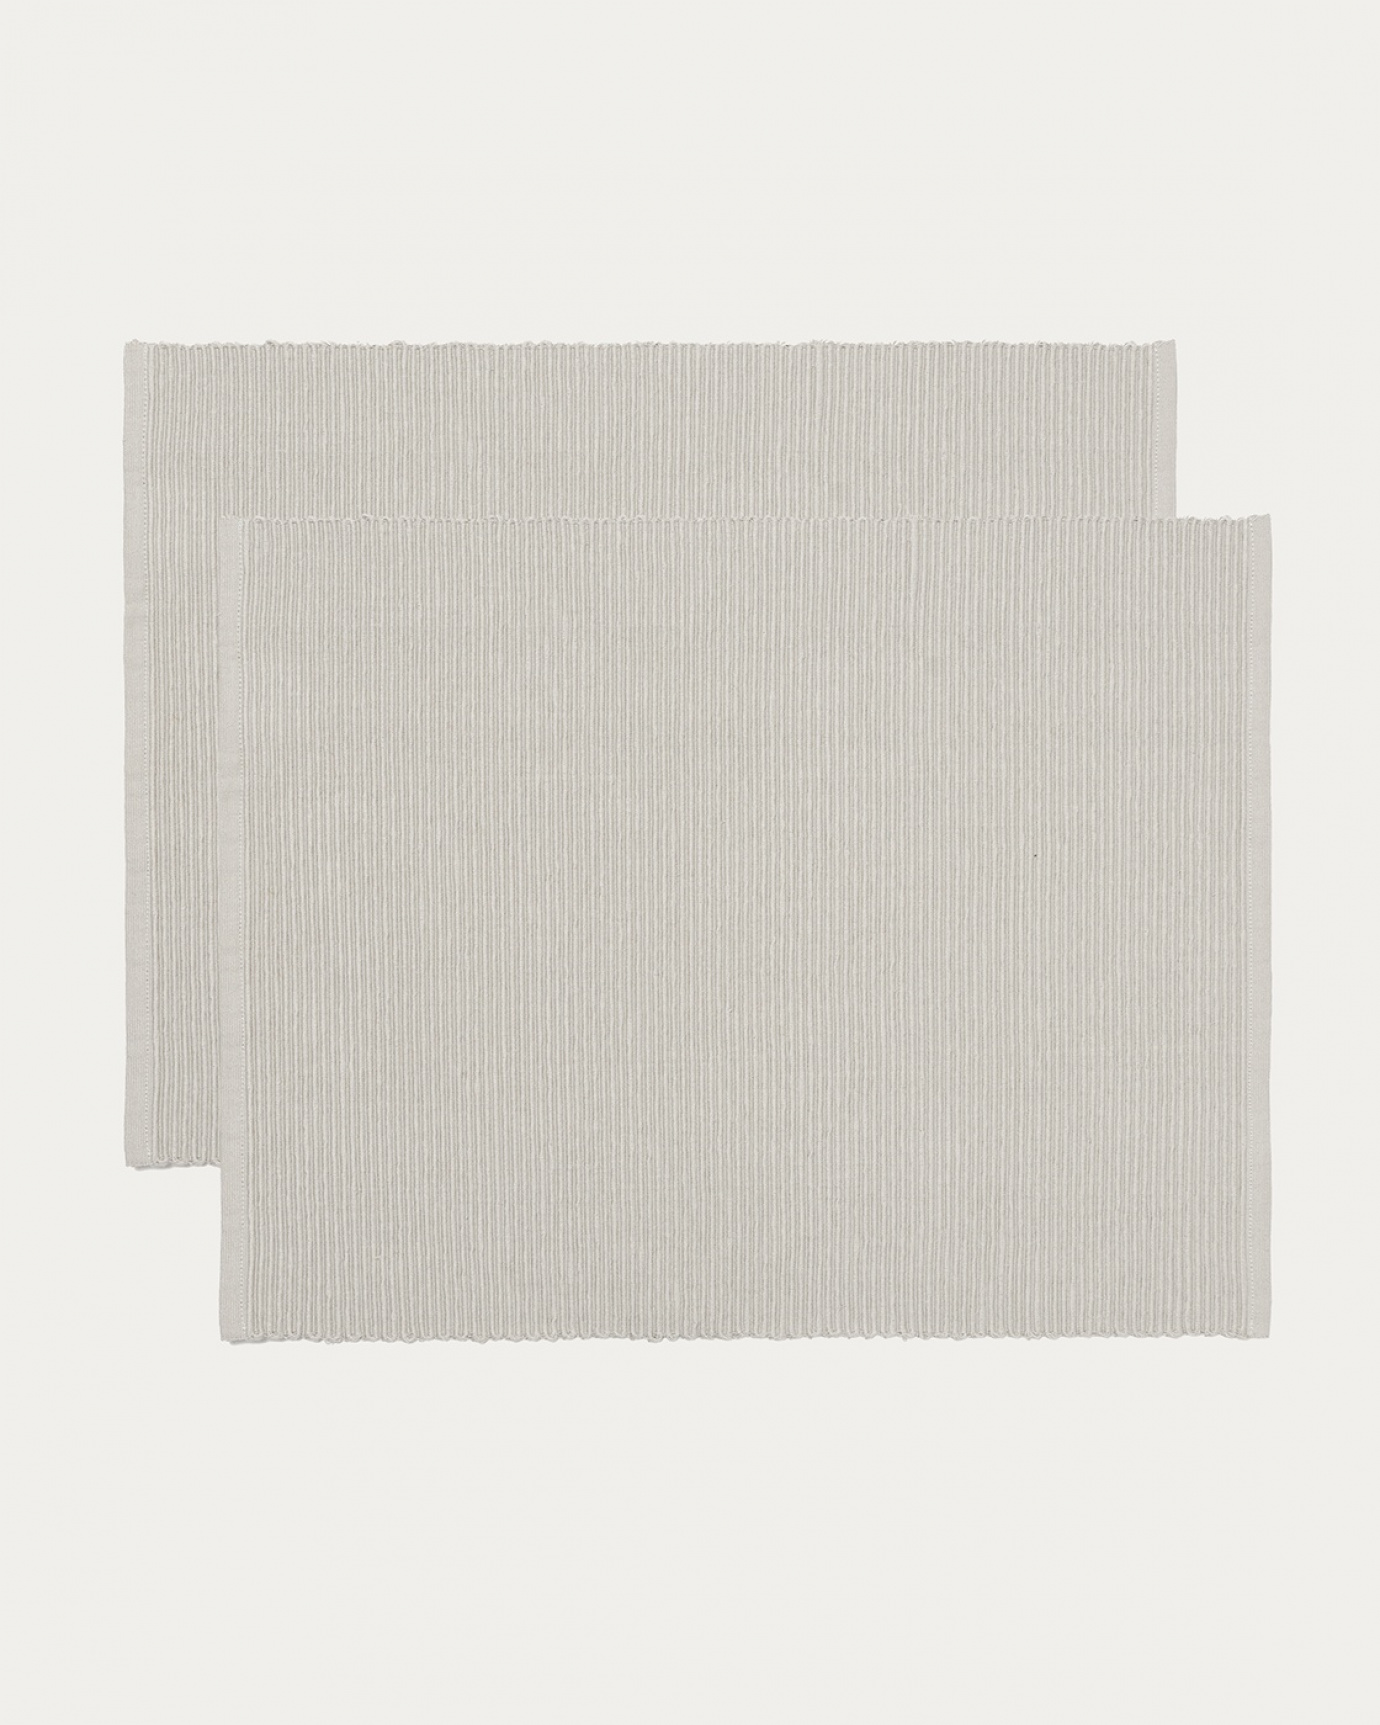 Image du produit set de table UNI gris perle en coton doux de qualité côtelée de LINUM DESIGN. Taille 35 x 46 cm et vendu en lot de 2.